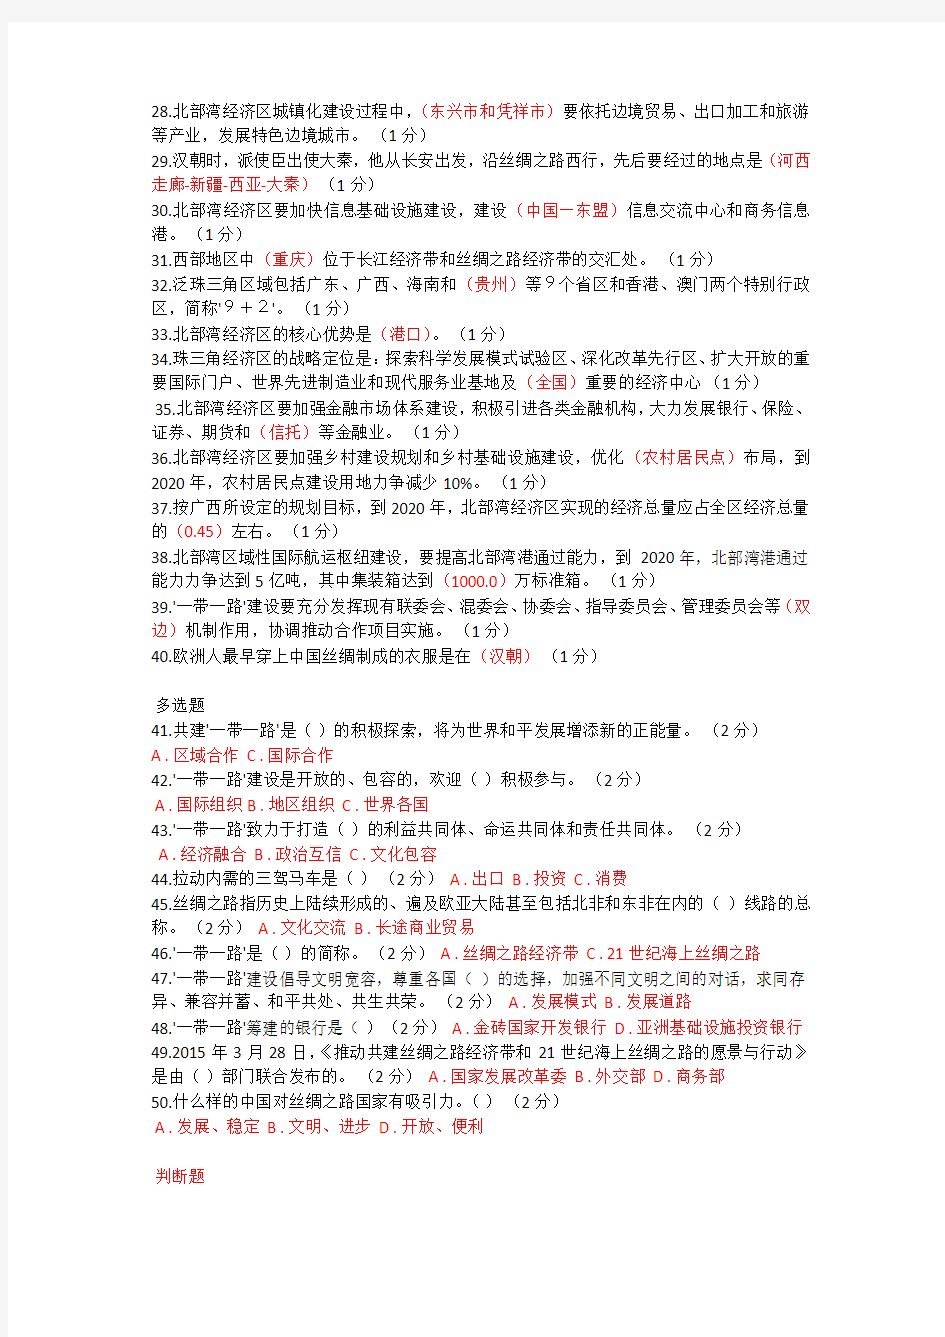 重庆市2016年公需科目“一带一路”考试(96分)正确答案